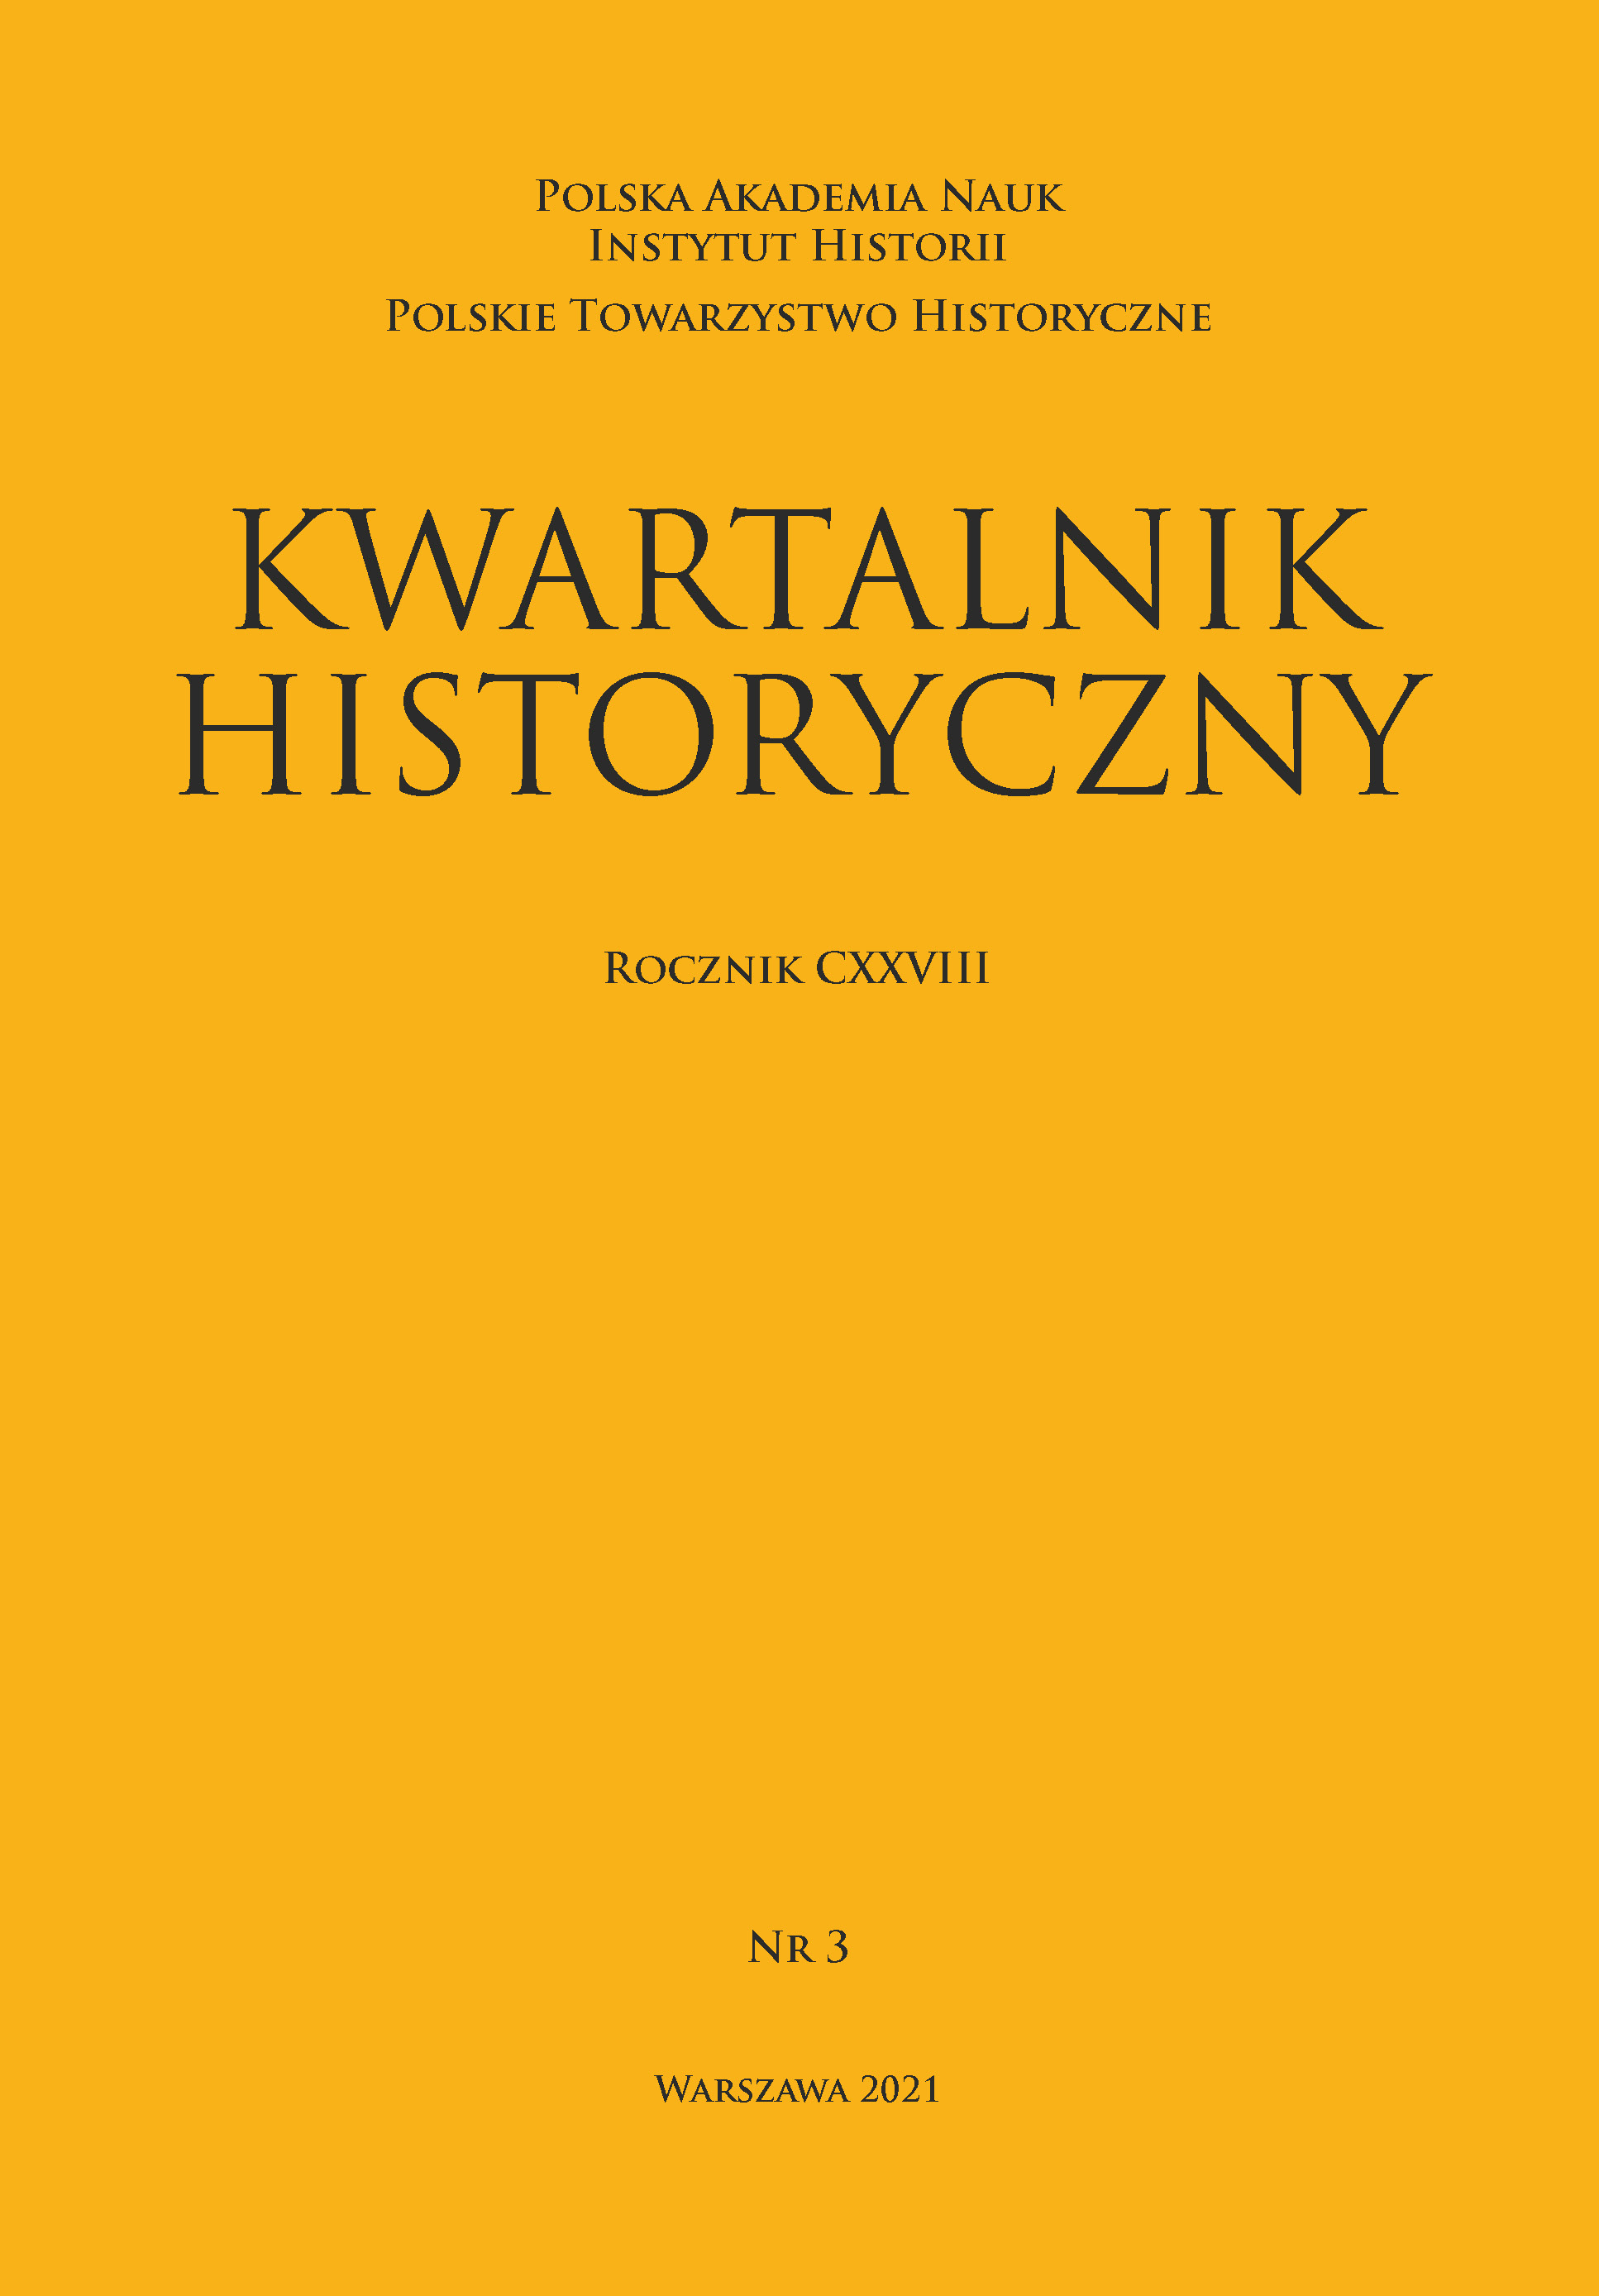 Między semantyką historyczną a kontekstem społecznym epoki — o języku politycznym szlachty Rzeczypospolitej